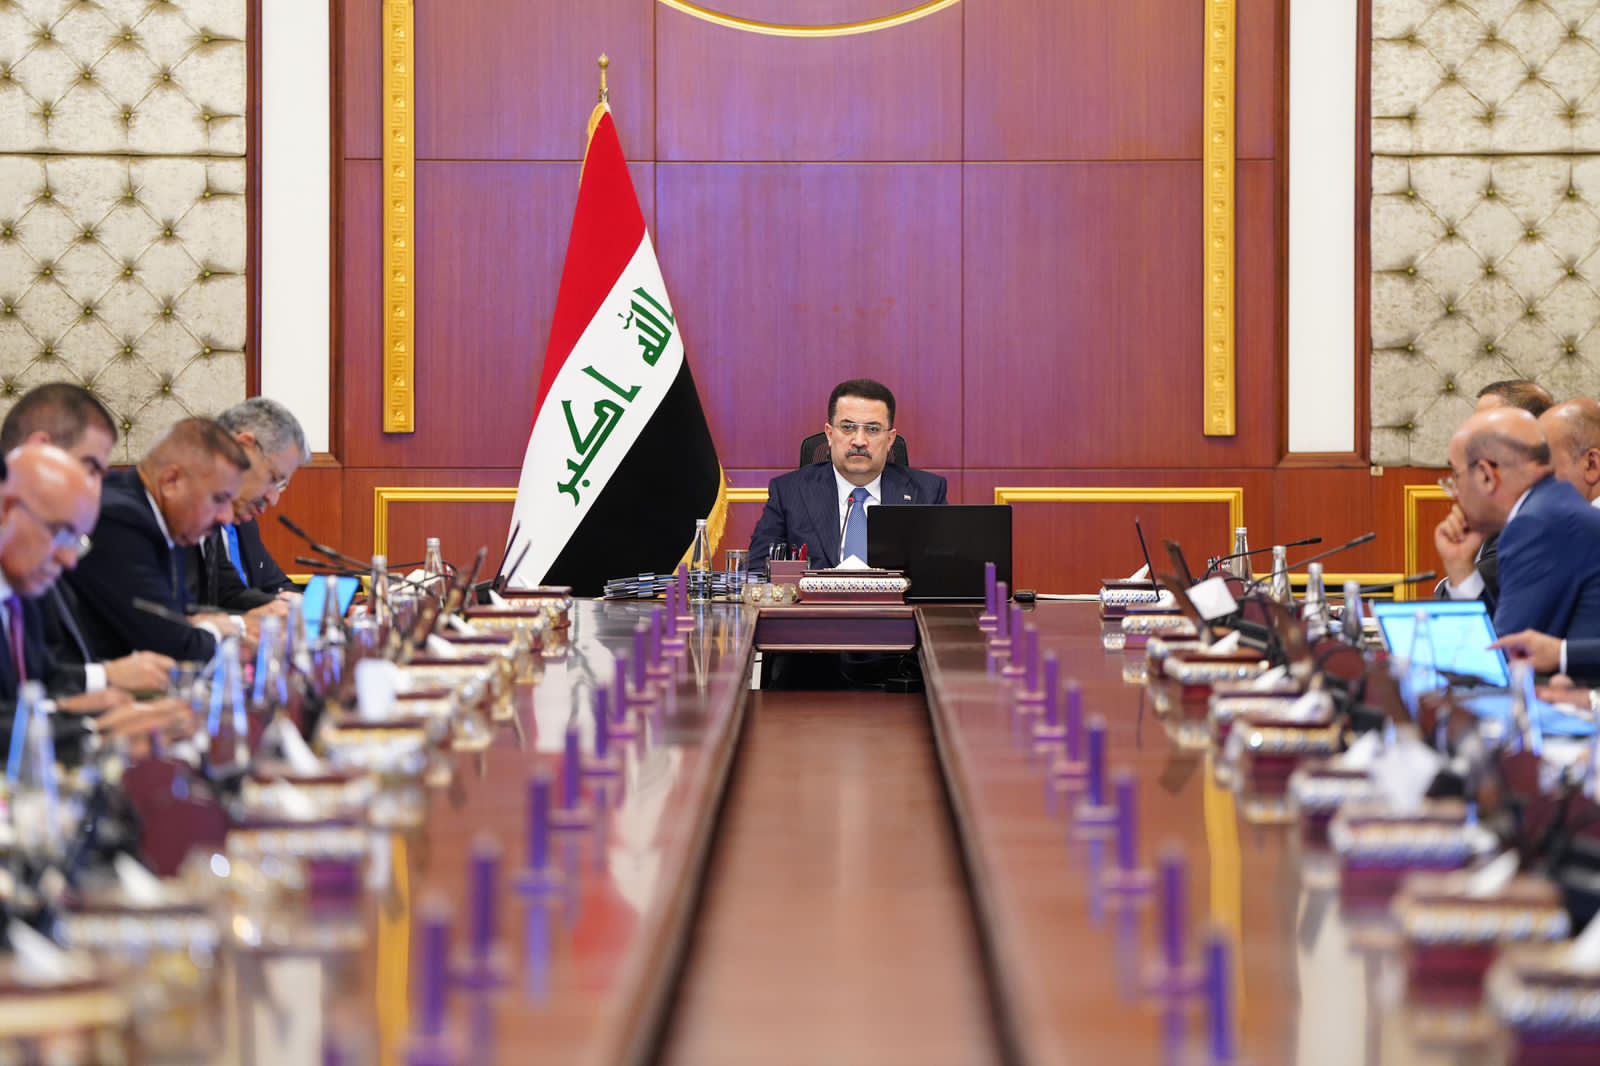 الحكومة العراقية تنأى بنفسها عن صفحات وحسابات تكيل المديح "المفرط" لها وللسوداني